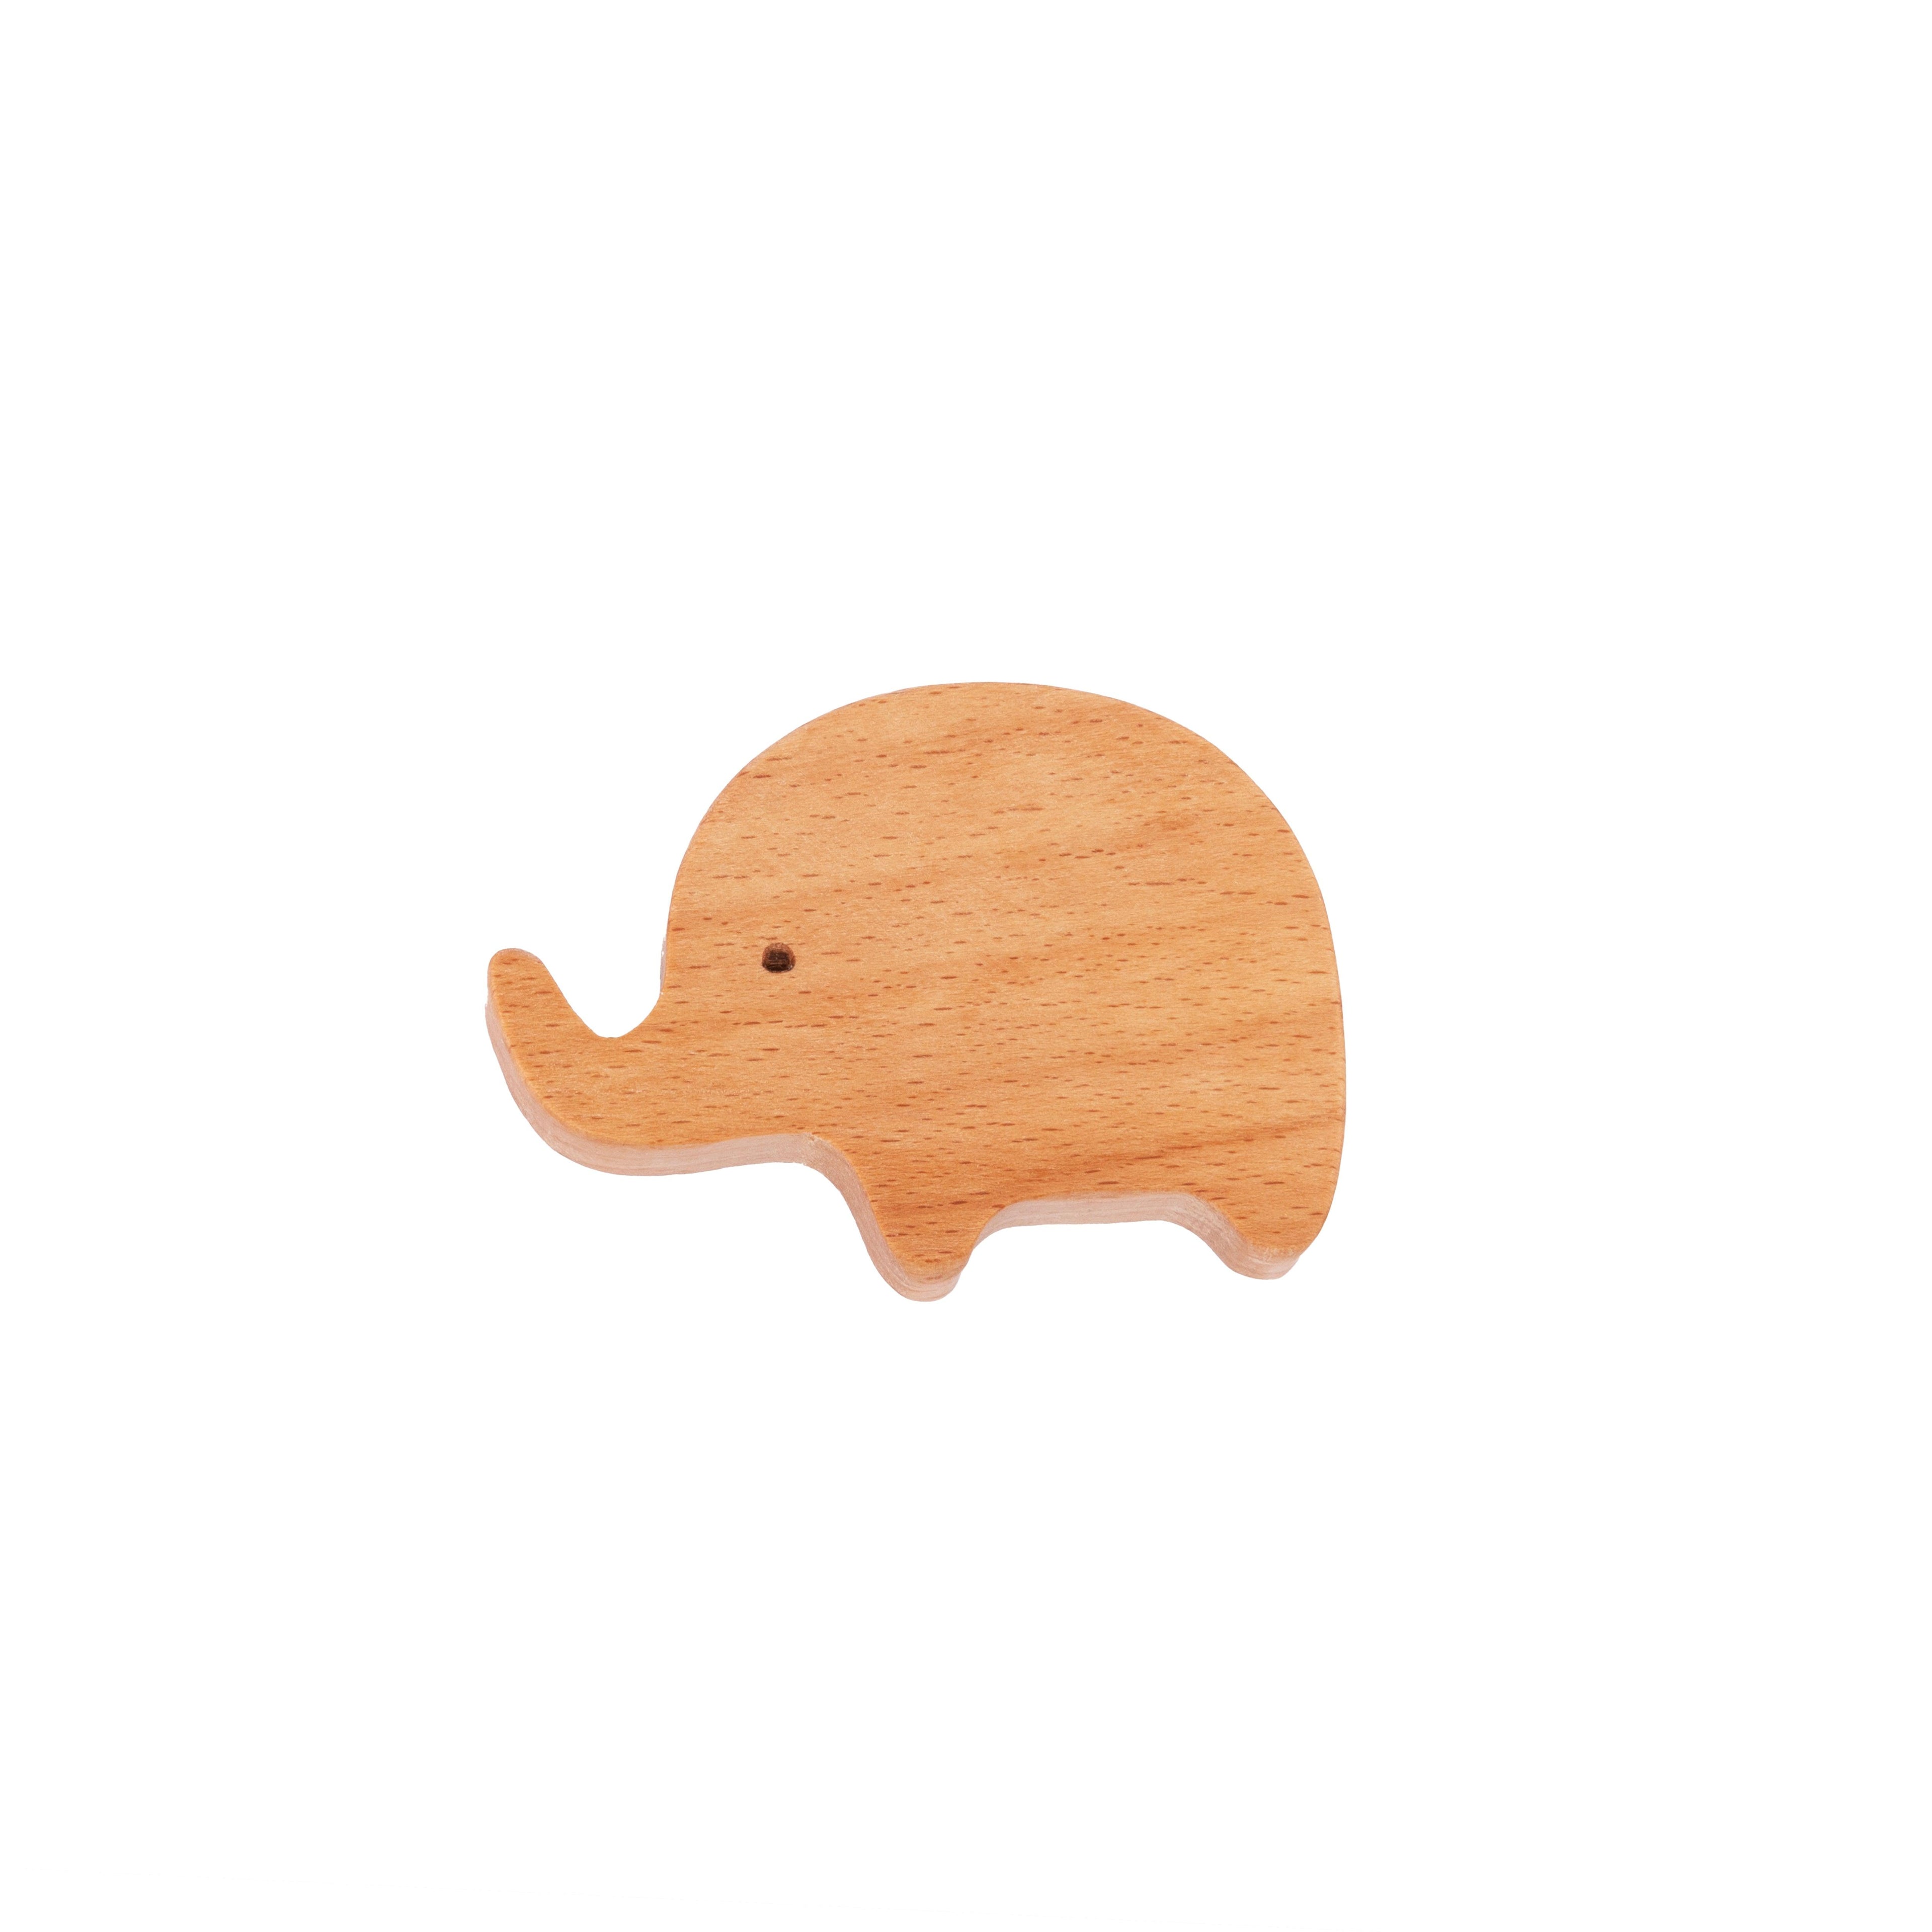 Elephant Wooden Knob Knob - M A N T A R A